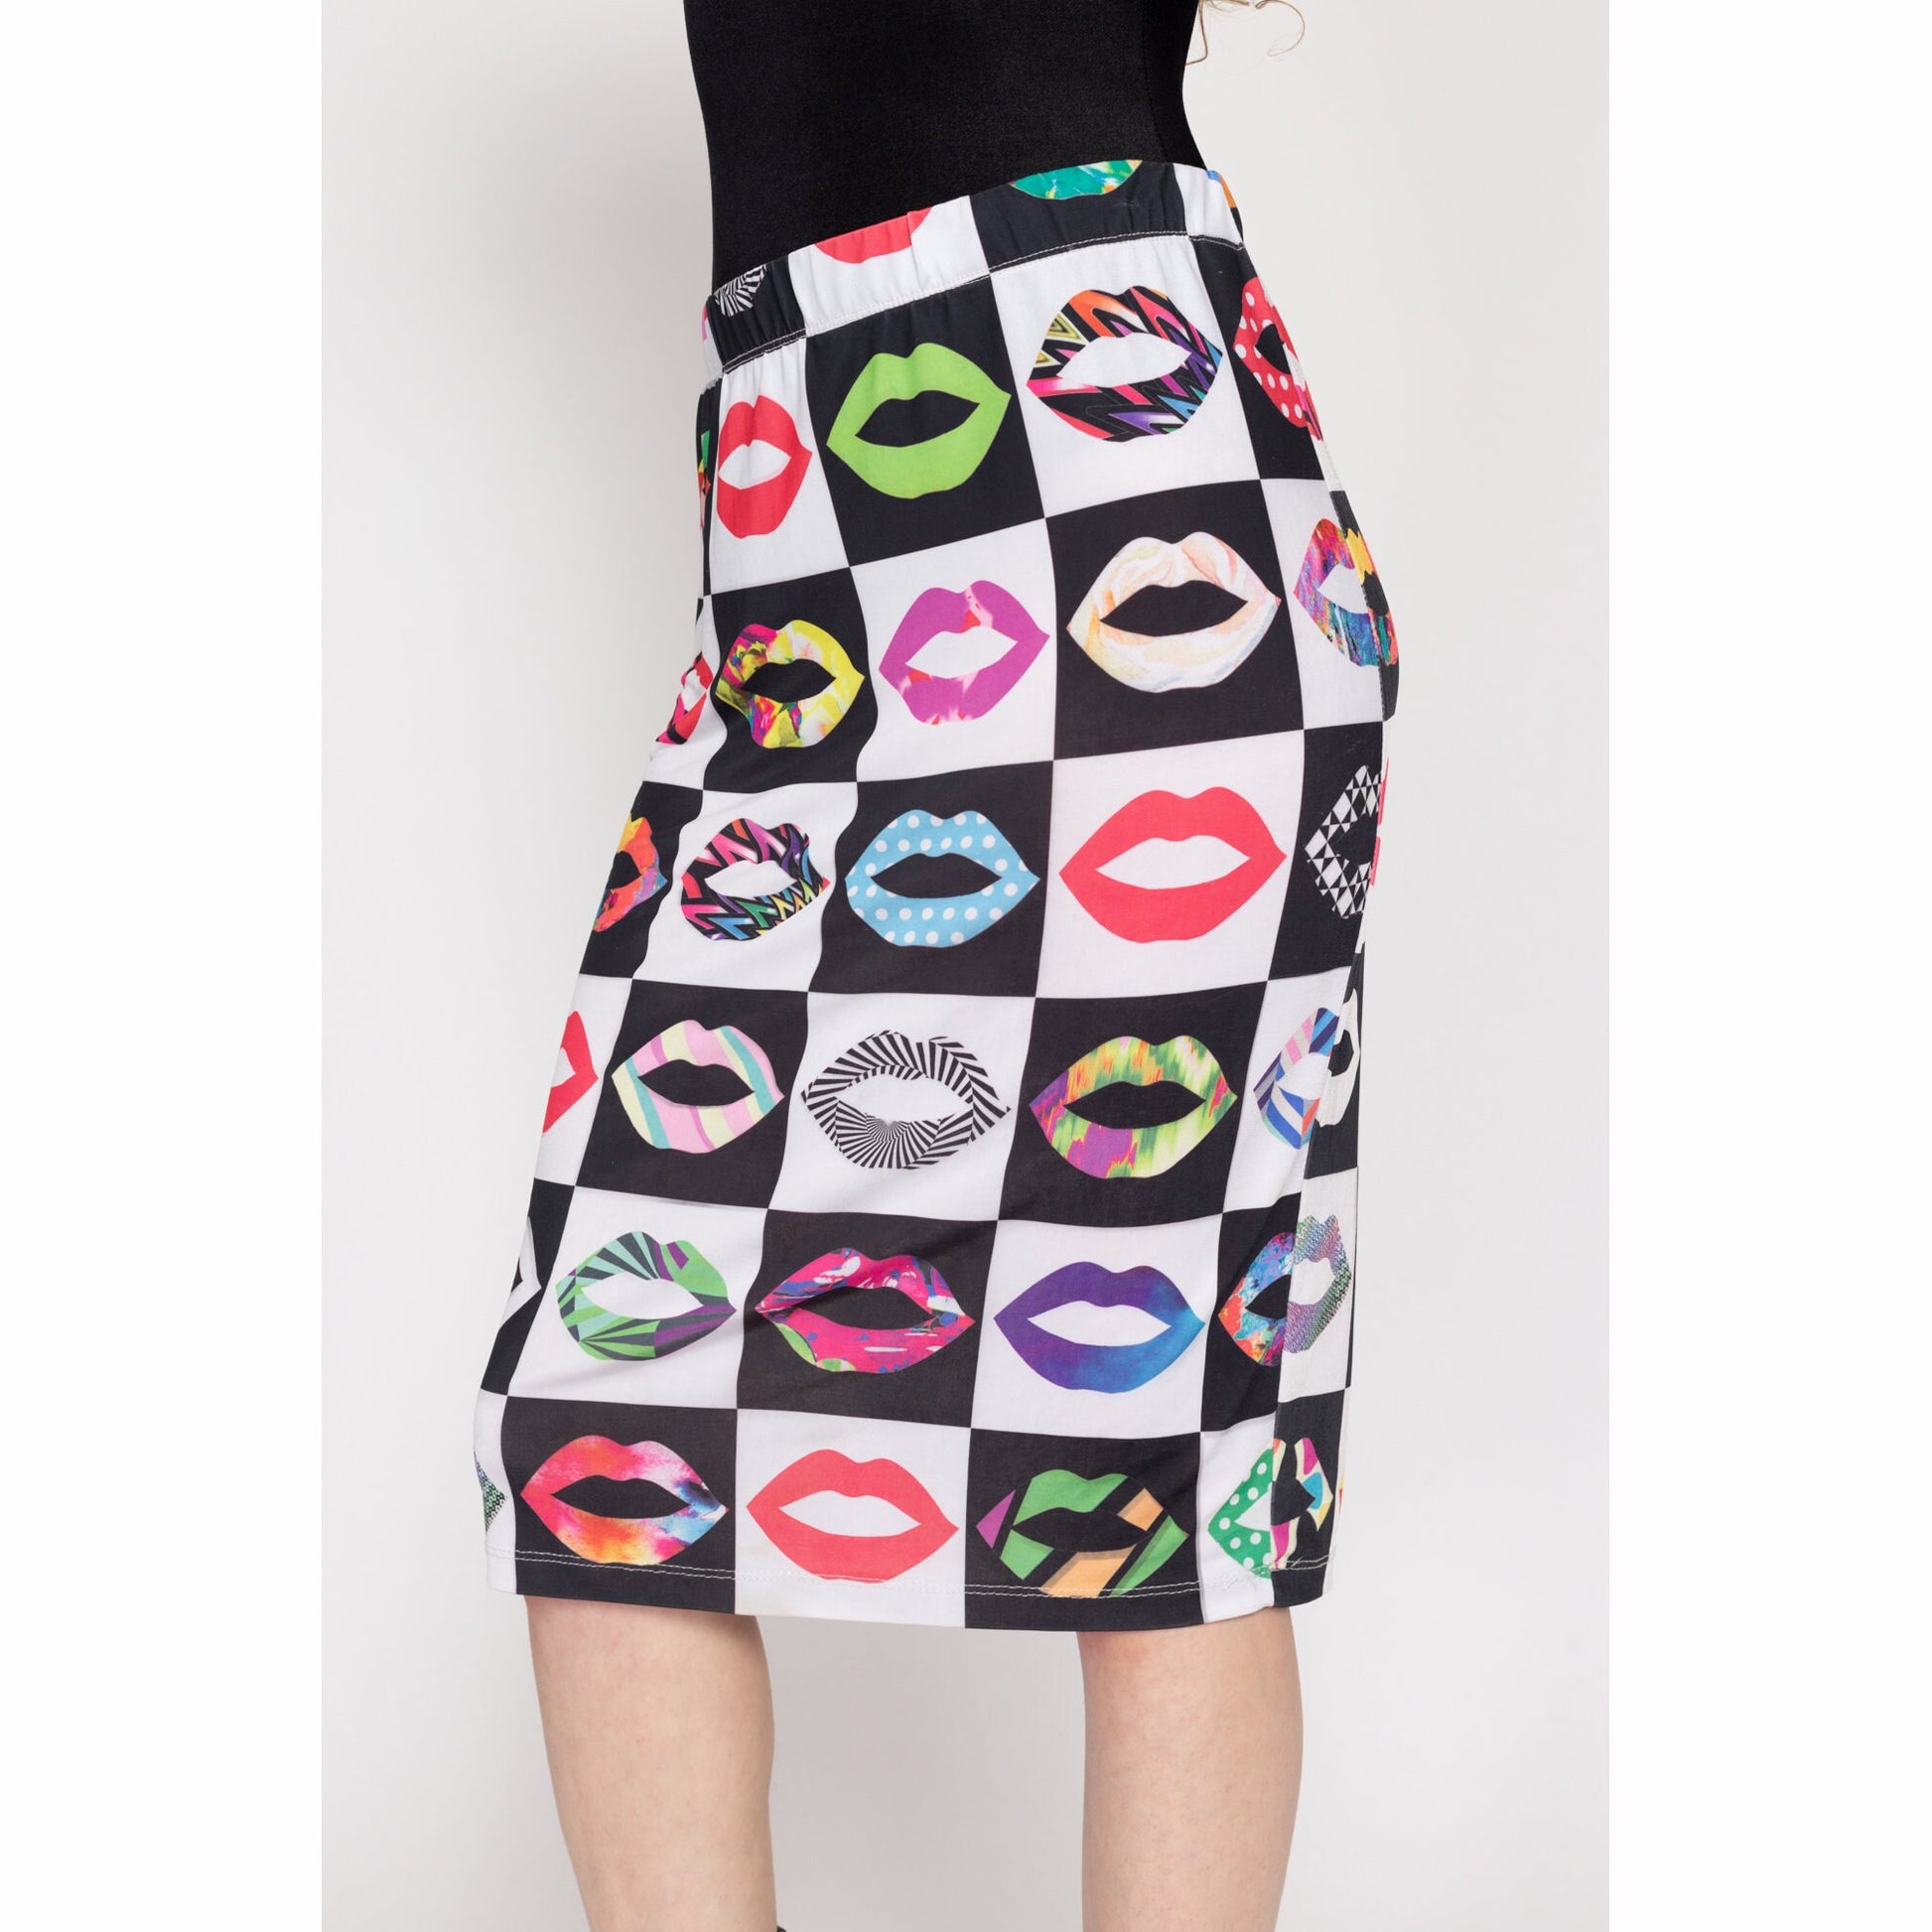 Large 90s Pop Art Lips Print Midi Skirt | Vintage Black & White Checkered High Waisted Stretchy Skirt